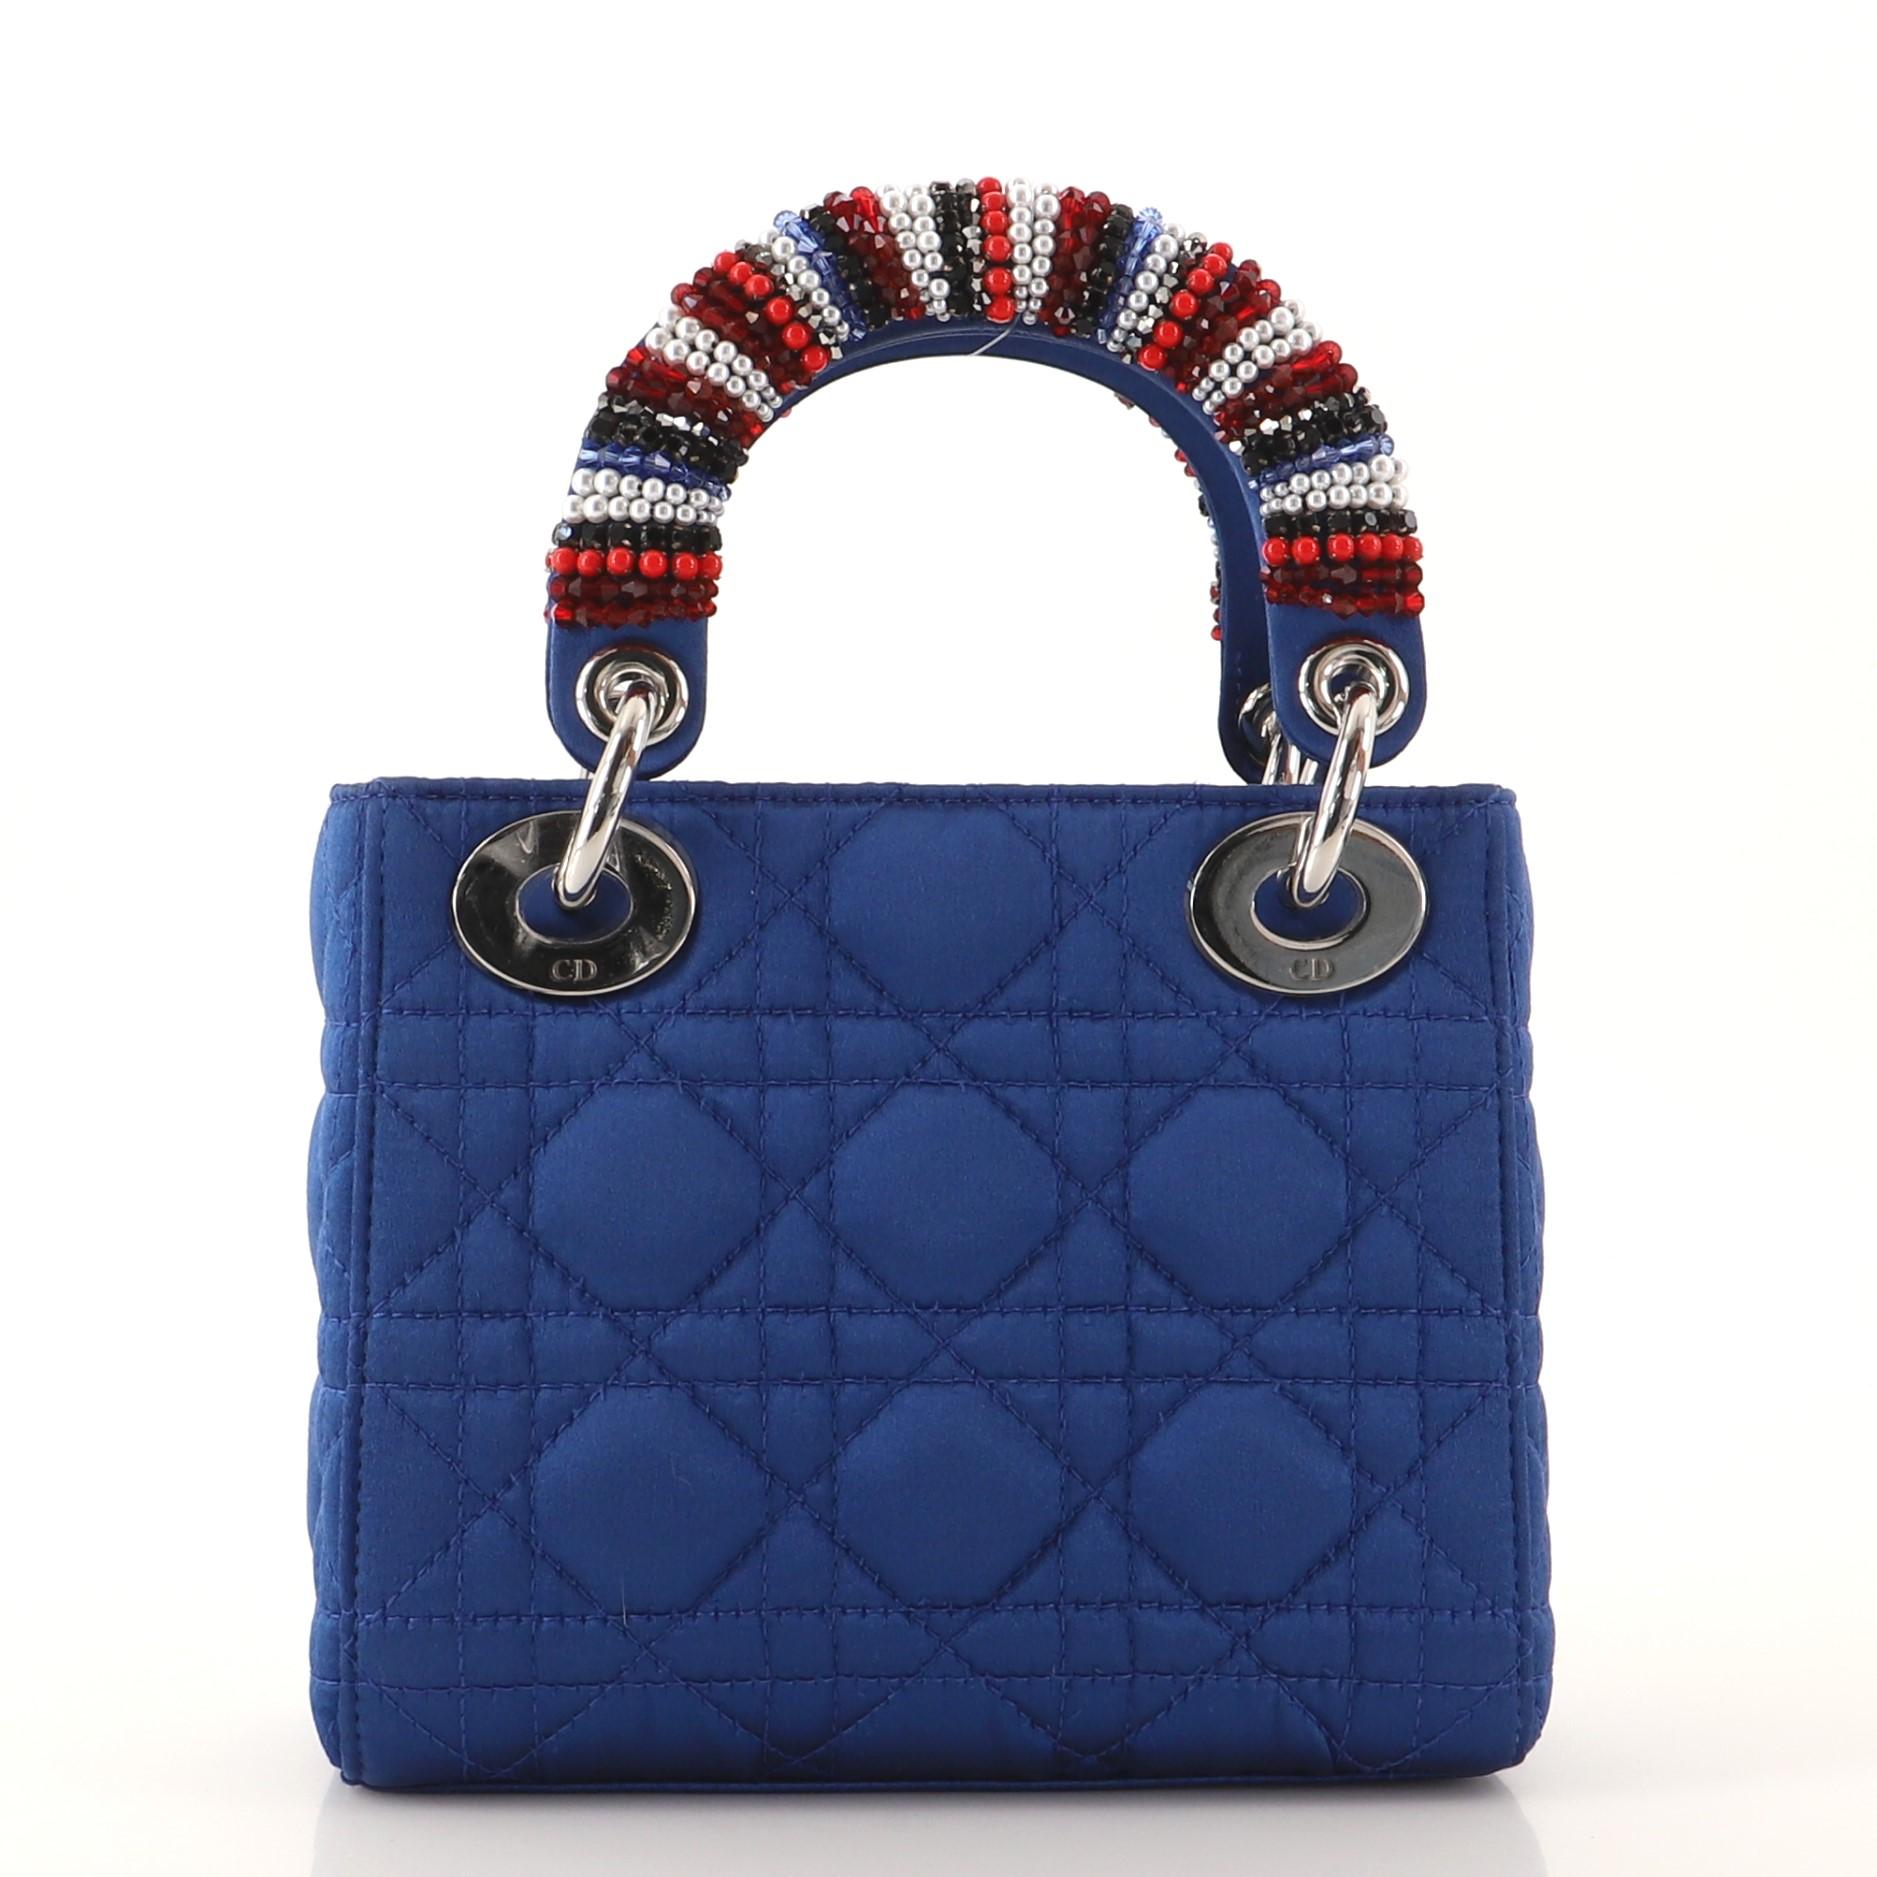 christian dior blue handbag